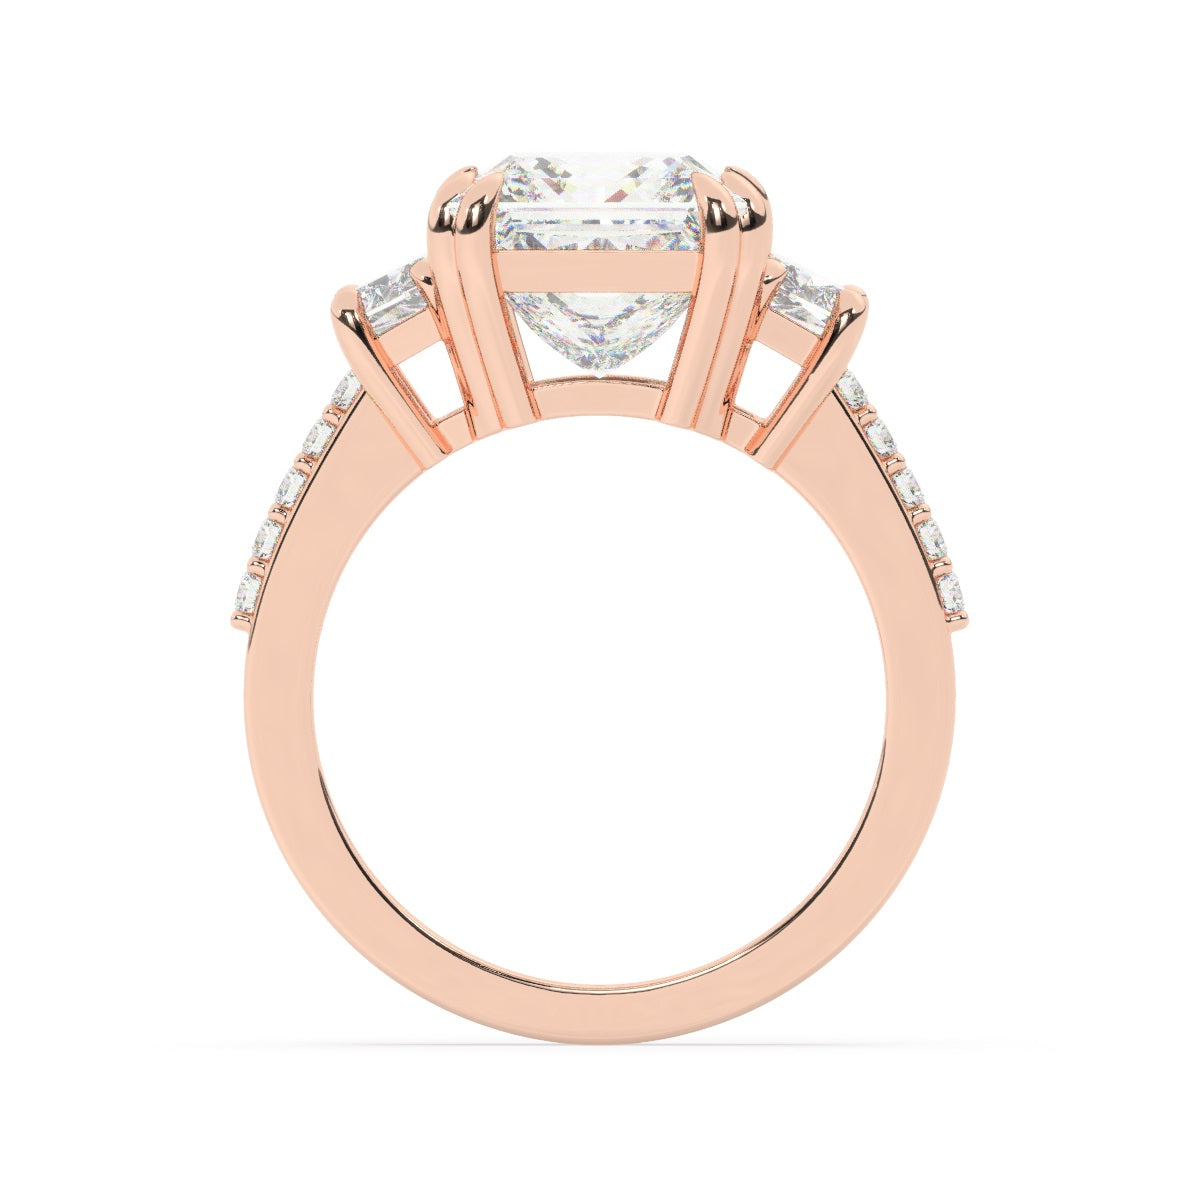 14k White Gold Diamond Ring V0370